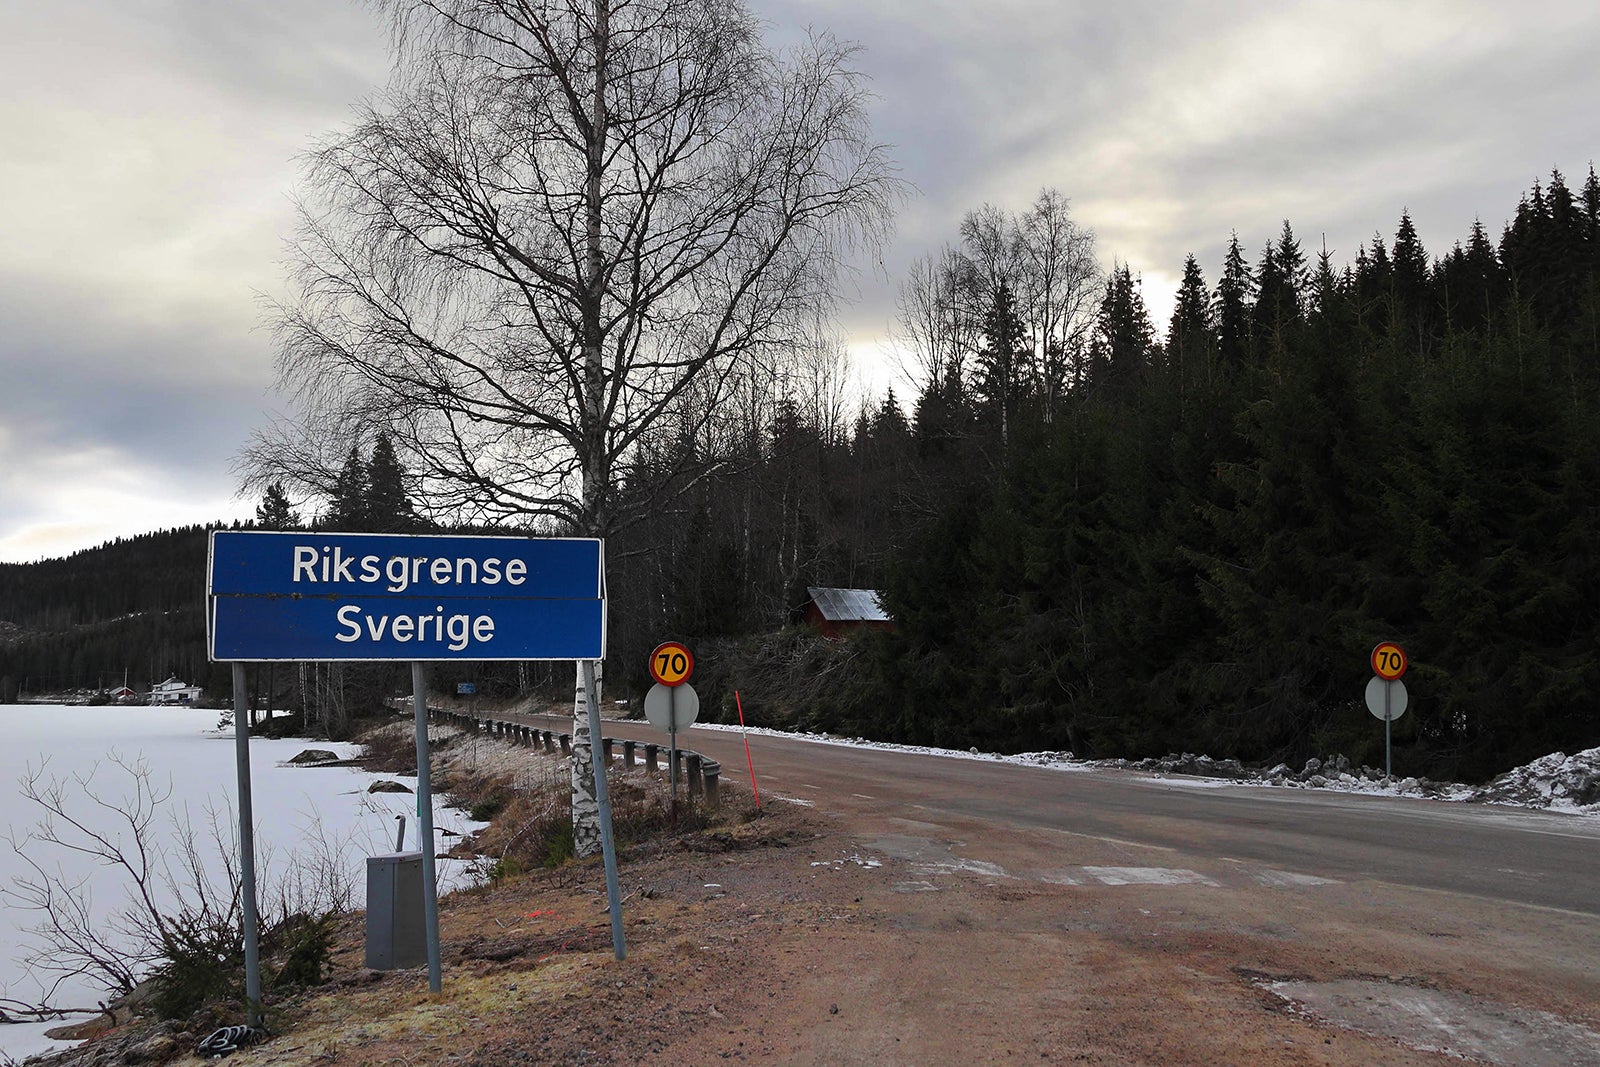 振り向けば当然「スウェーデン国境」とノルウェー語で表記された看板があります。